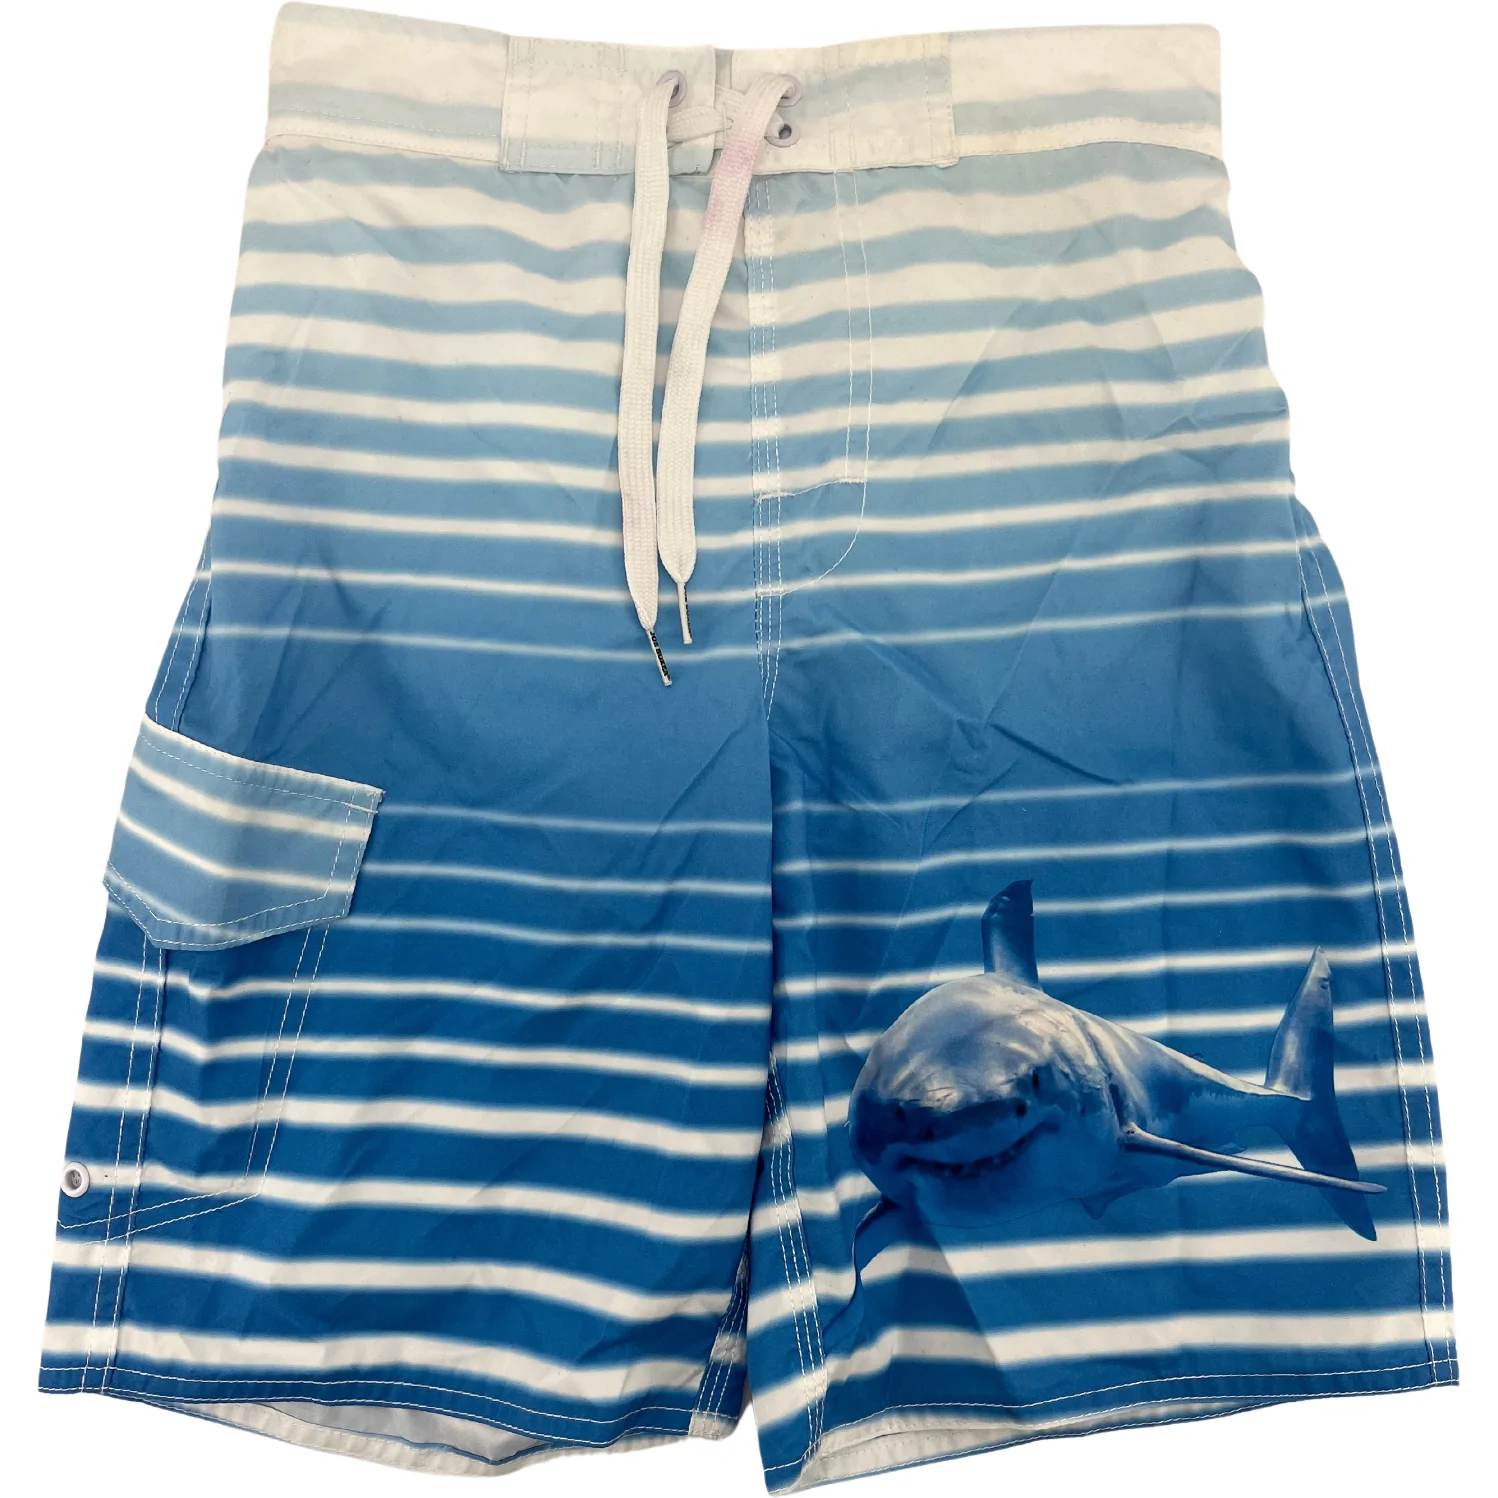 Joe Boxer Children's Bathing Suit / Boy's Swim Trunks / Blue & White / Medium